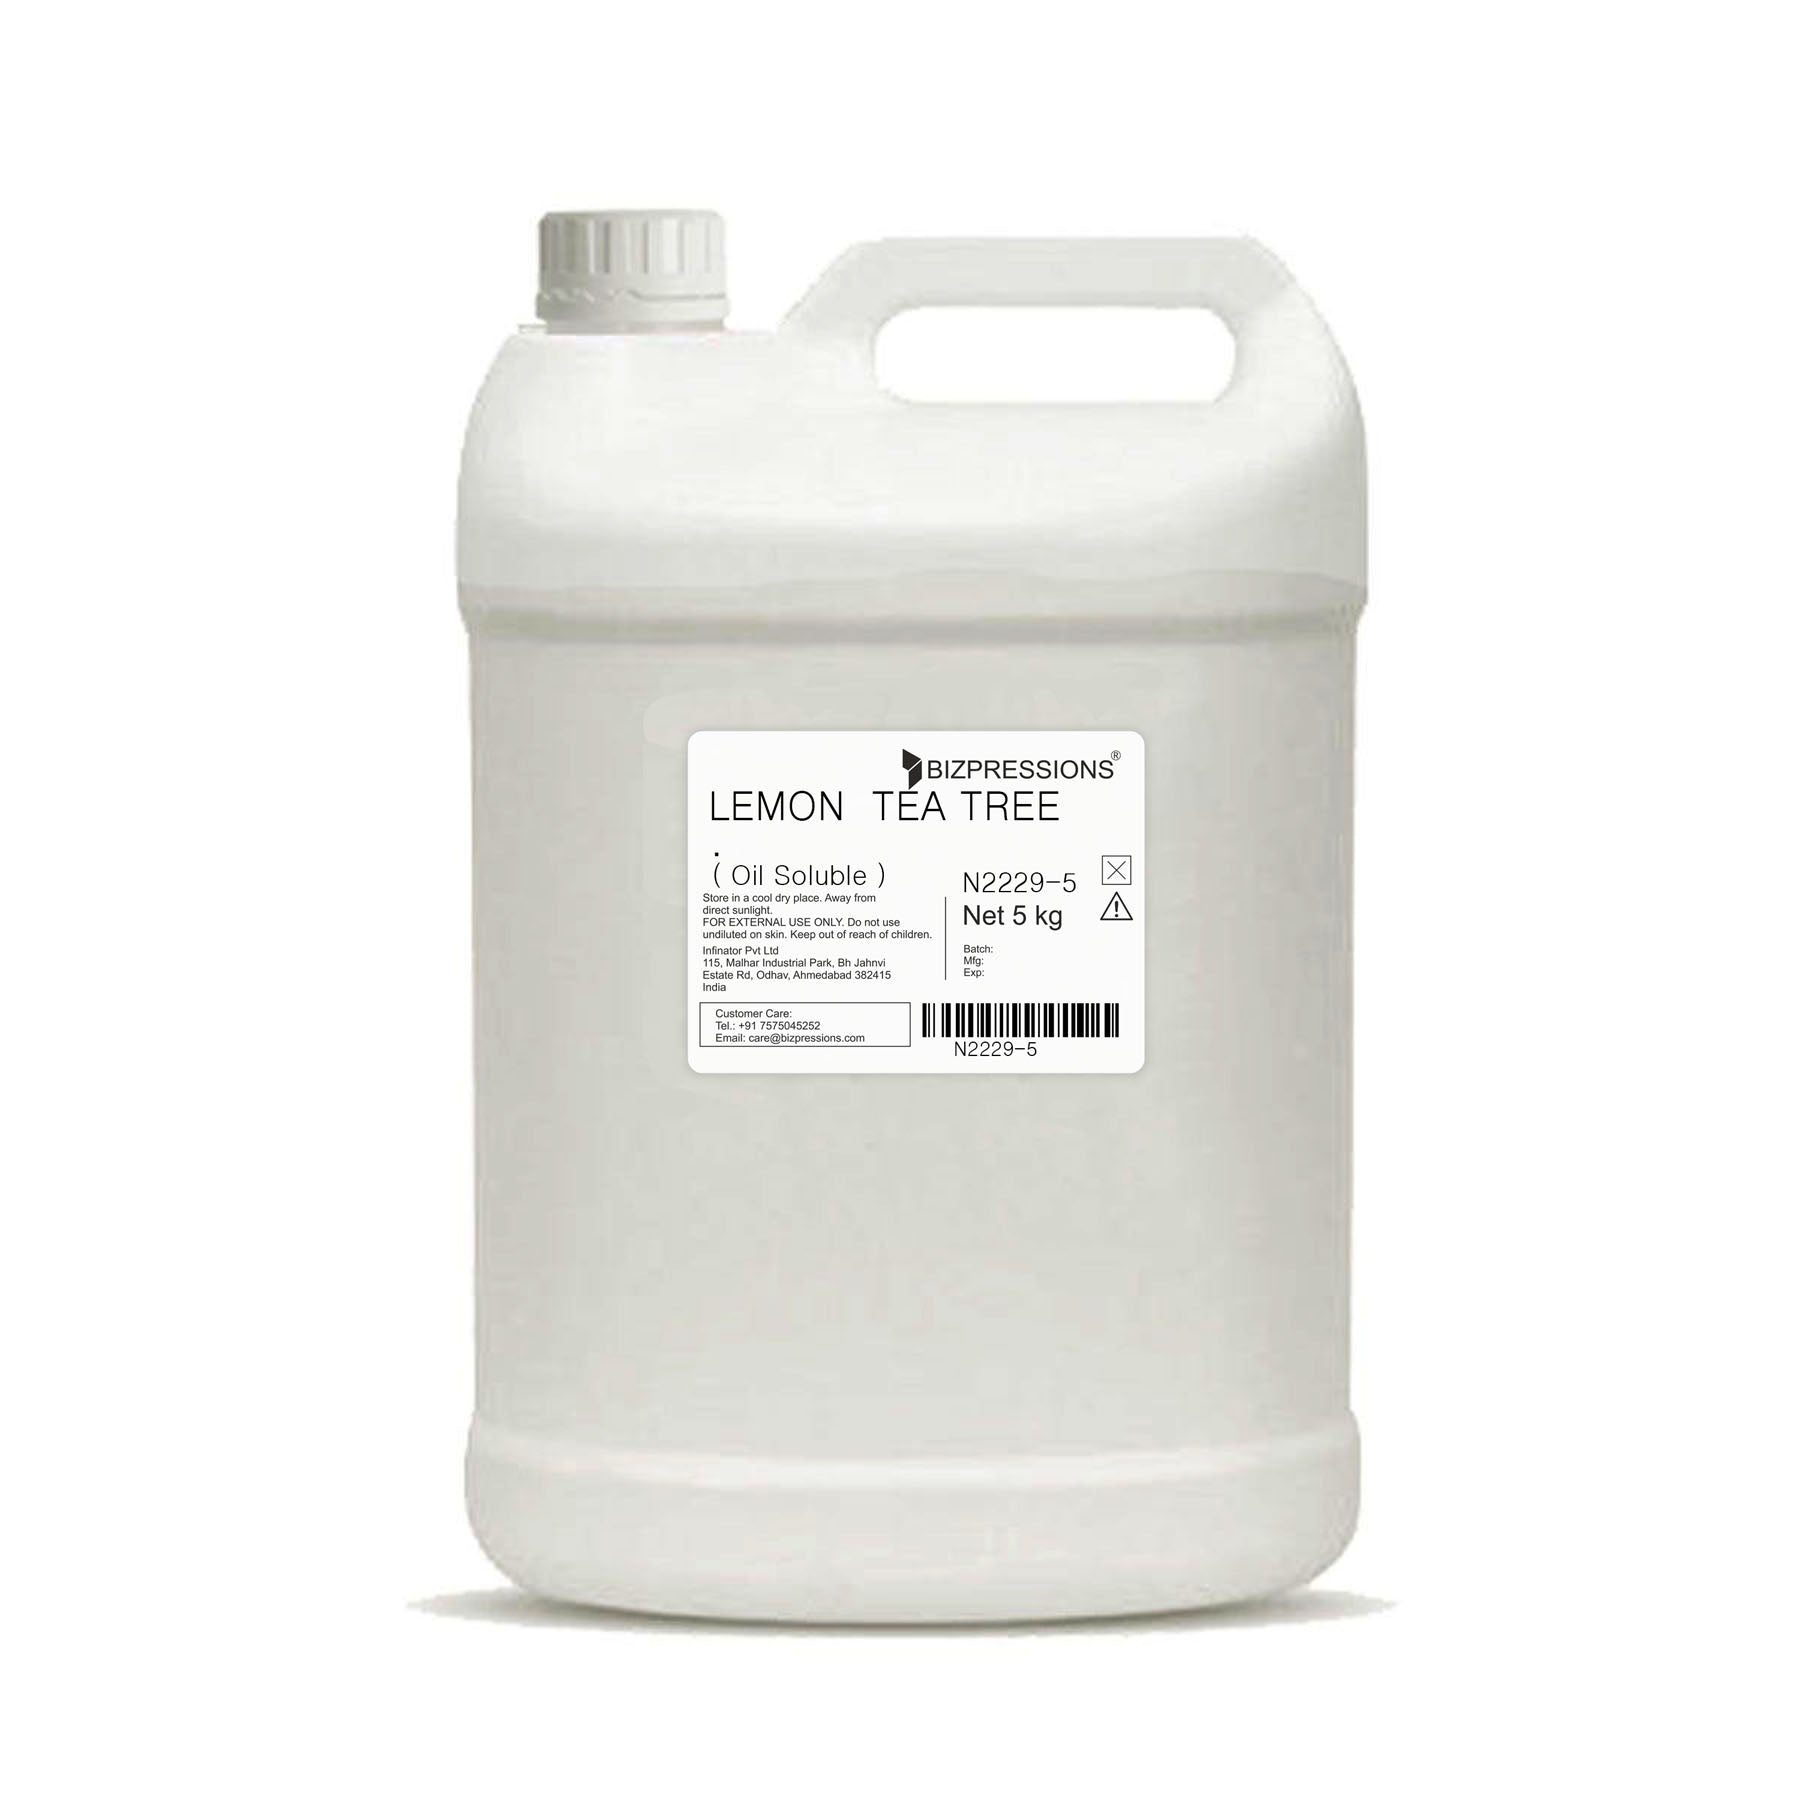 LEMON TEA TREE - Fragrance ( Oil Soluble ) - 5 kg